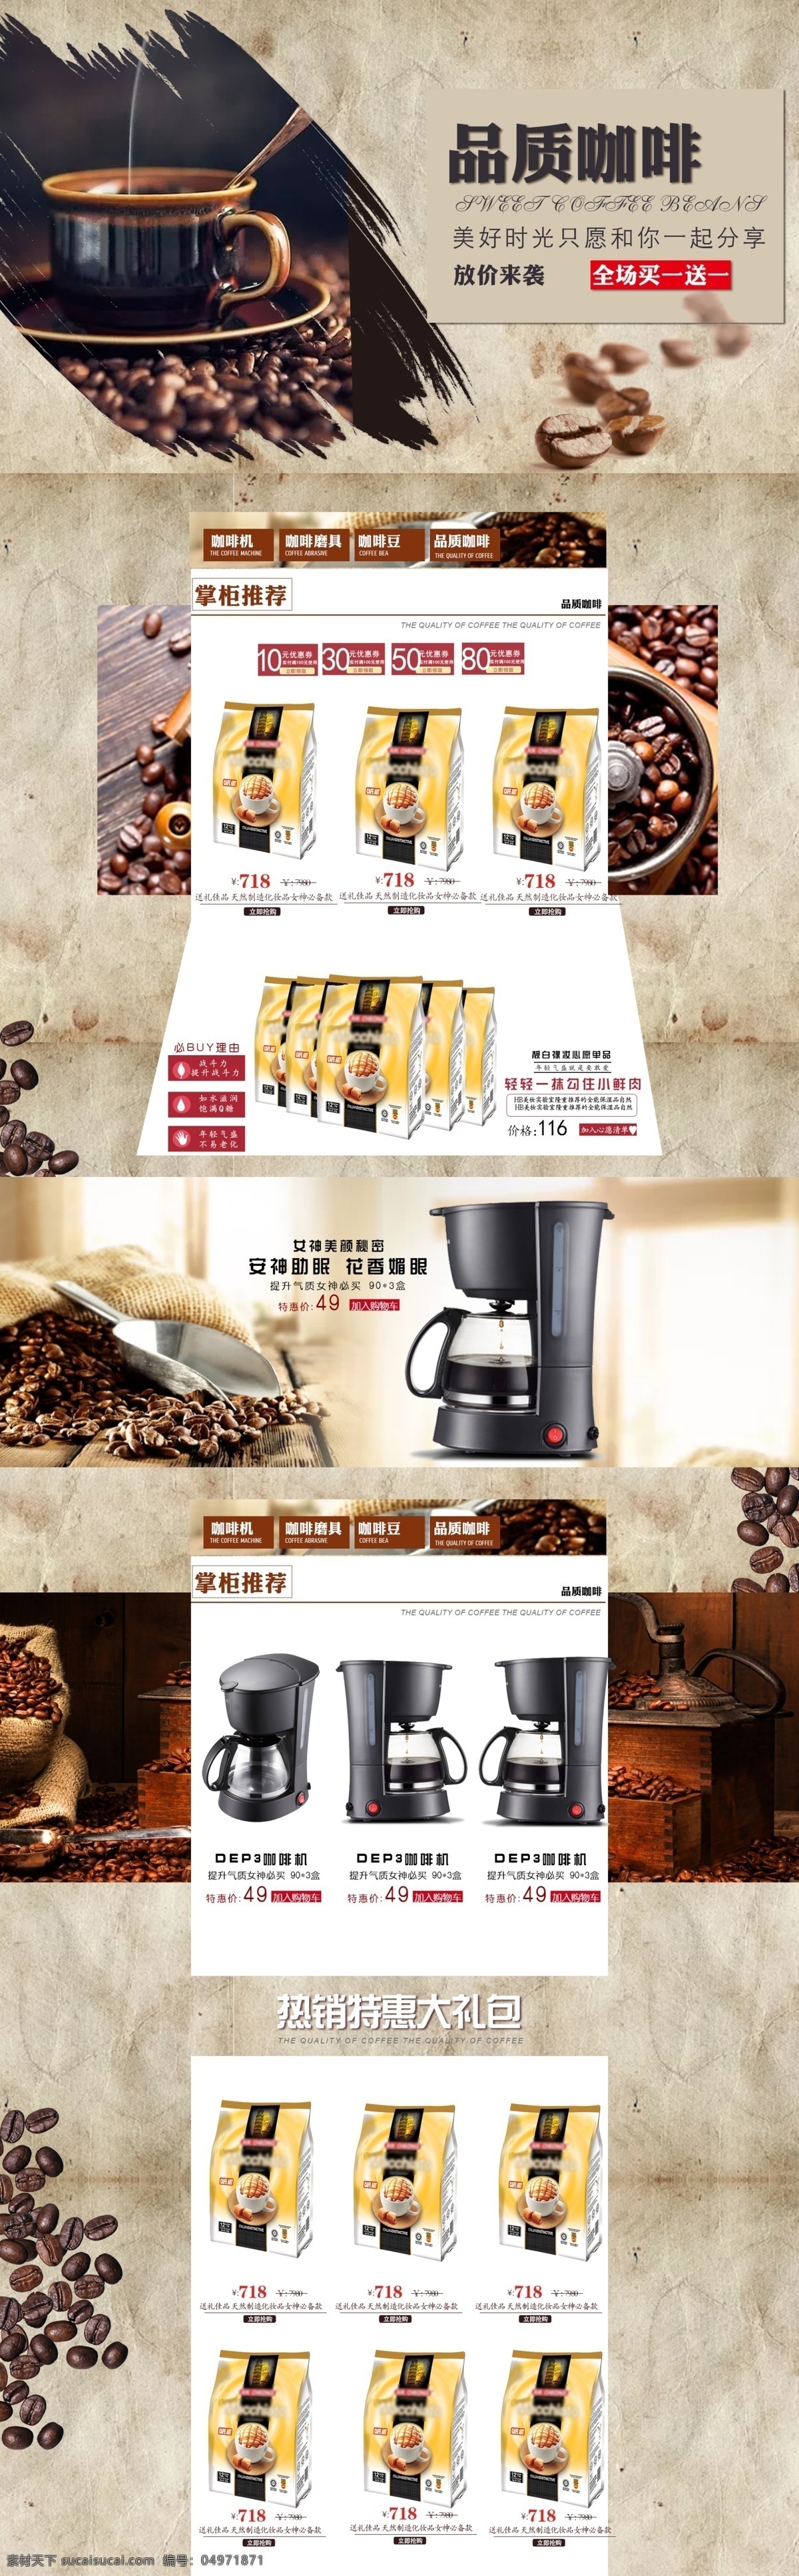 首页 咖啡 清新 高档 咖啡豆 咖啡机 简约 牛皮纸